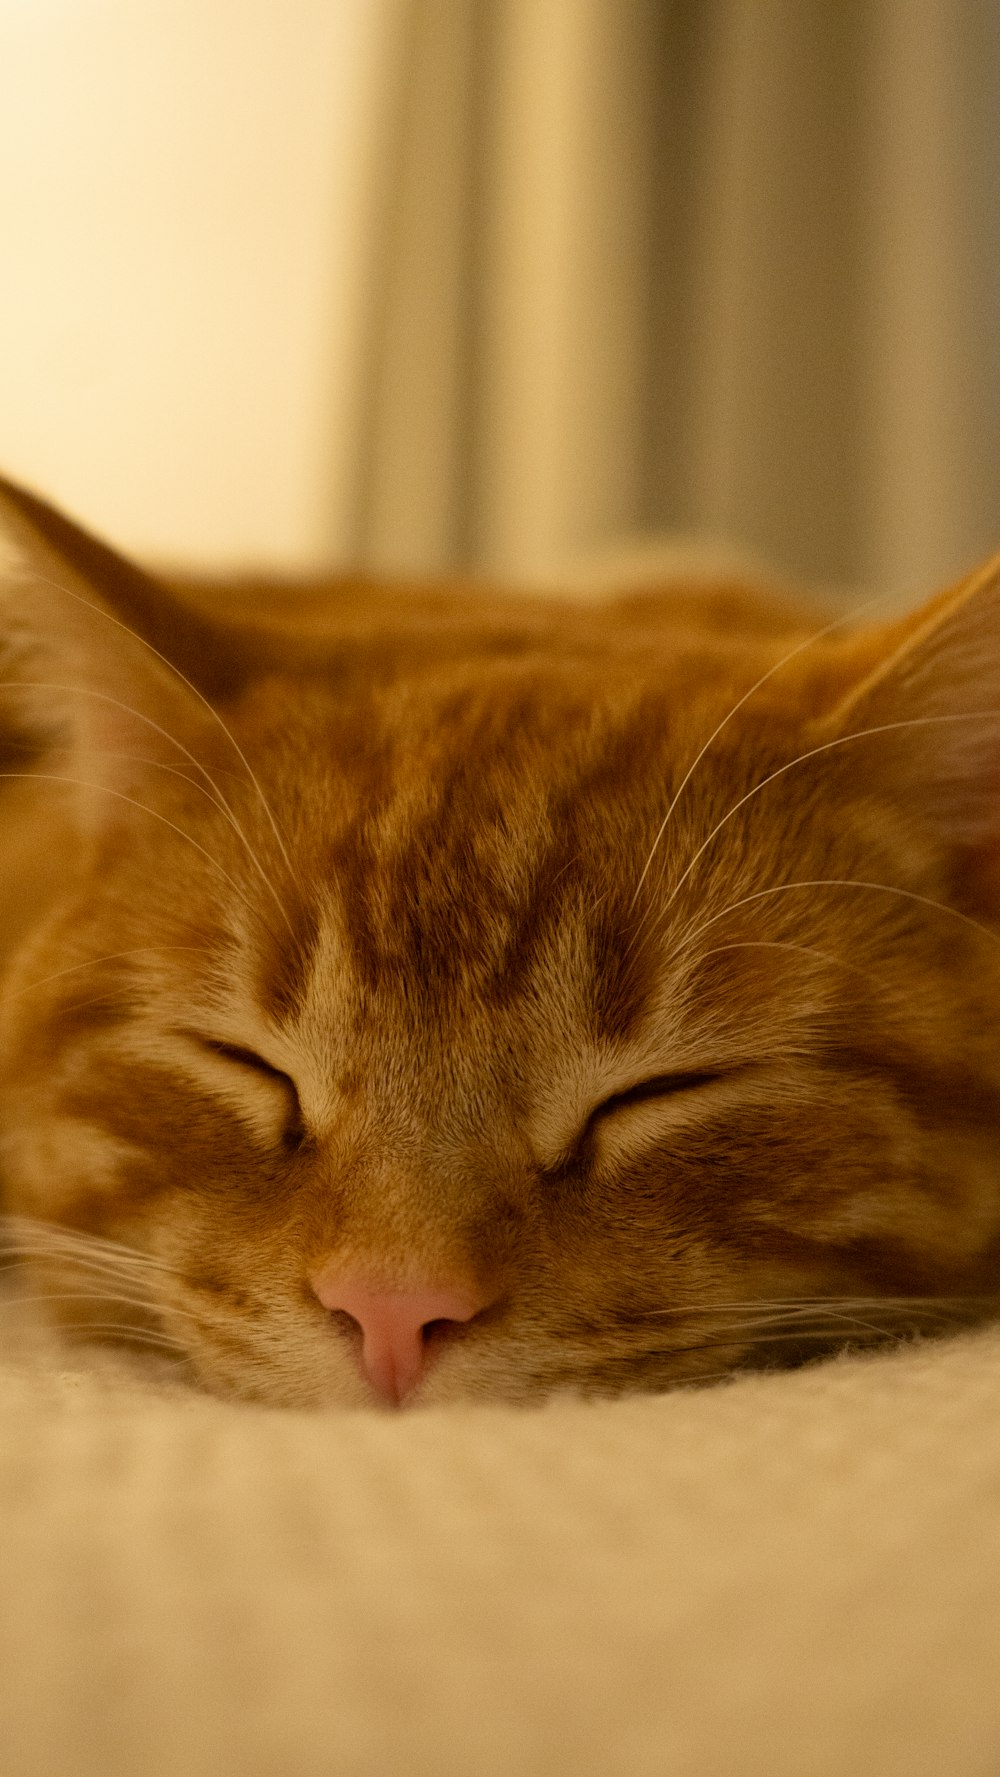 um close up de um gato dormindo em uma cama